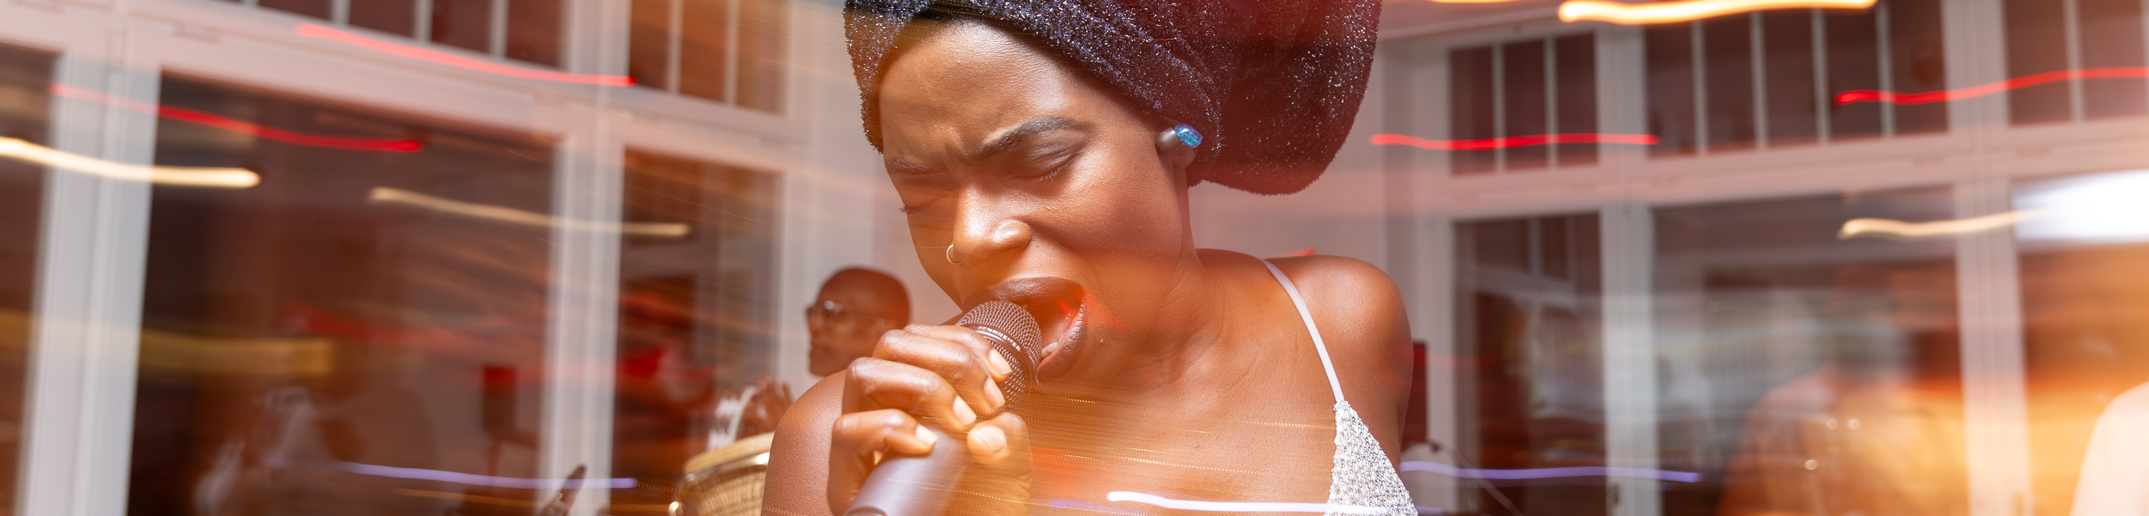 Eine Frau singt in ein Mikrofon.